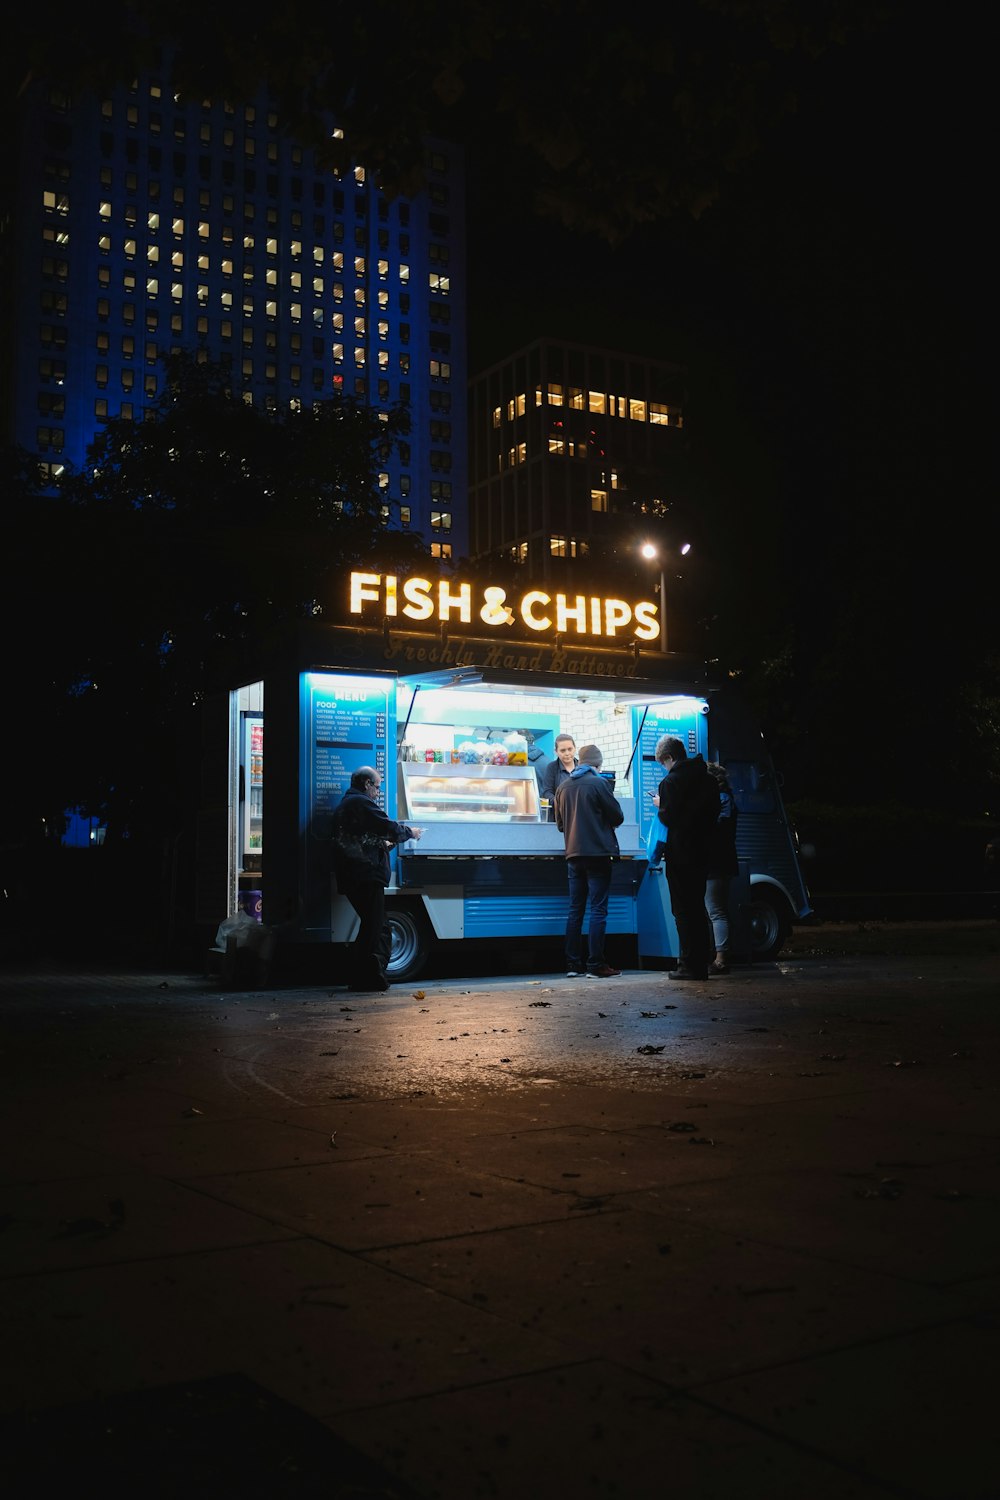 groupe de personnes debout sur le magasin Fish & Chips